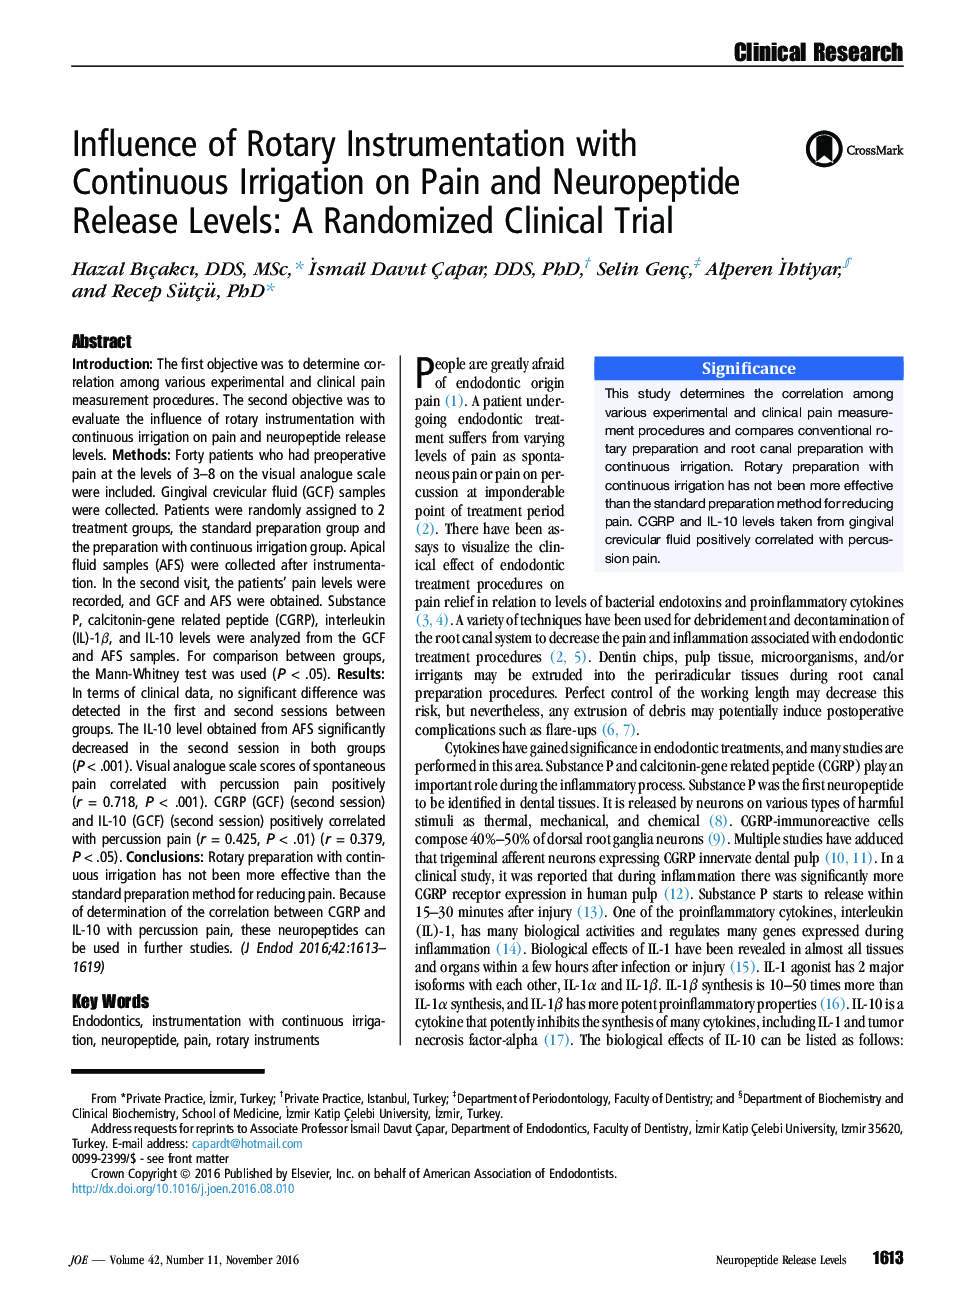 تأثیر ابزارهای روتاری با آبیاری مداوم بر روی سطوح آزاد سازی درد و نوروپپتید: یک آزمایش بالینی تصادفی 